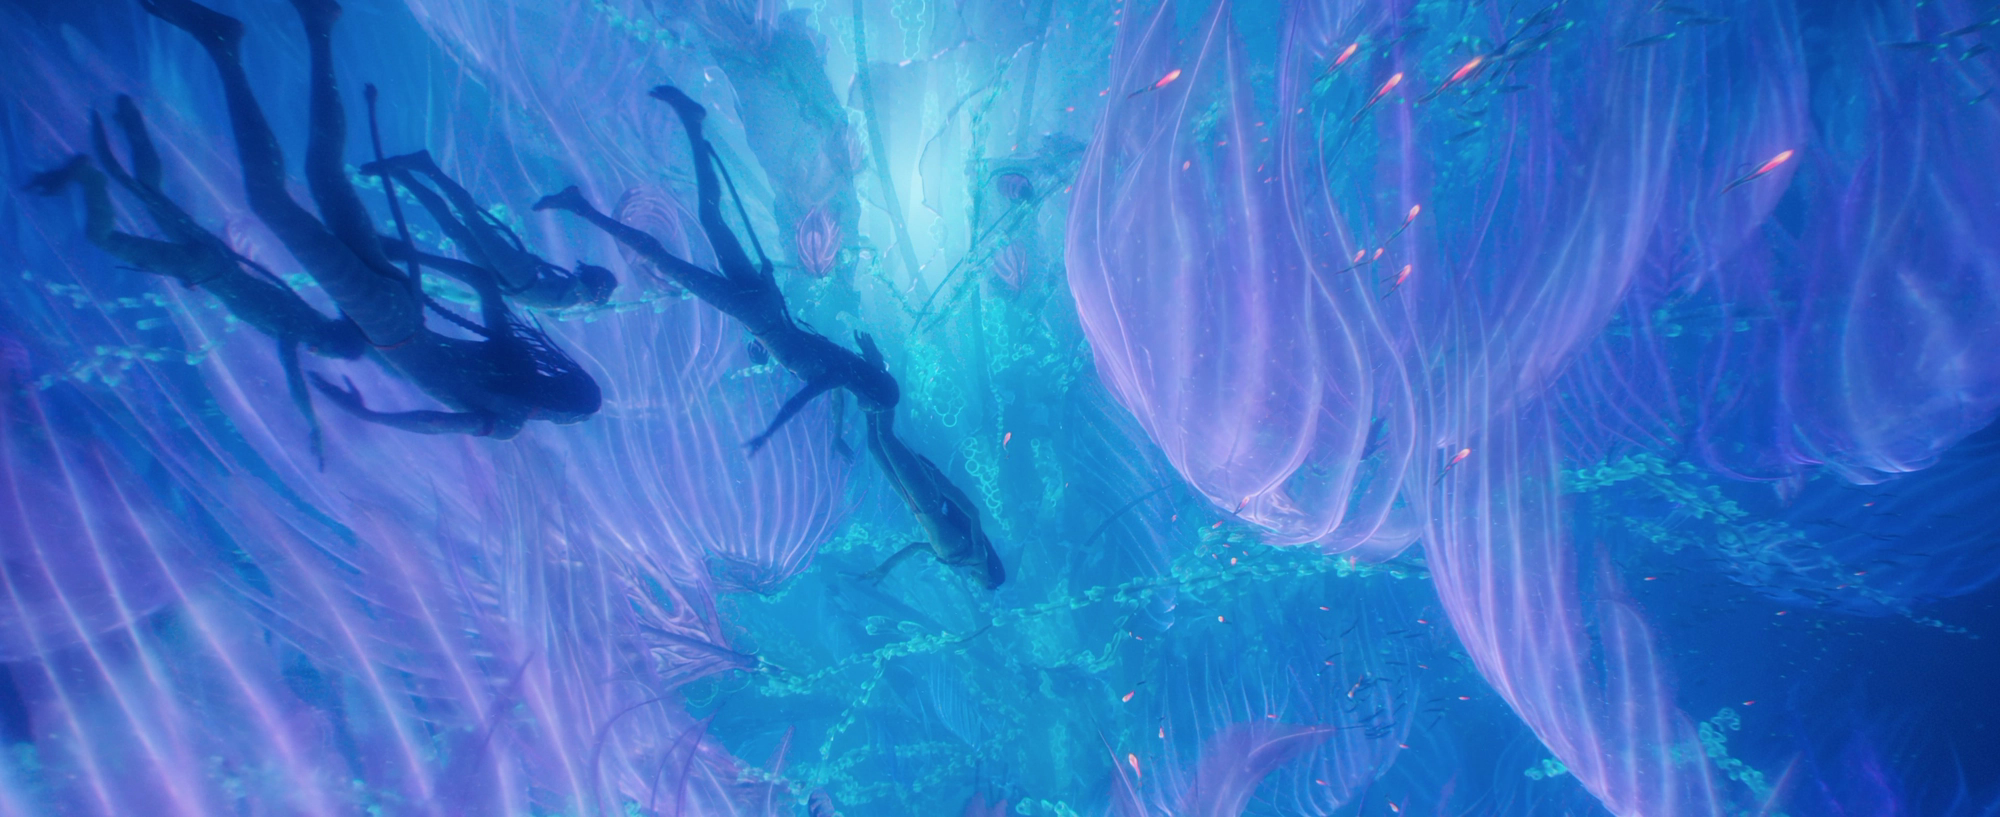 Avatar: The Way Of Water đích thị là kỳ quan thế giới chứ không đơn thuần là một bộ phim - Ảnh 6.